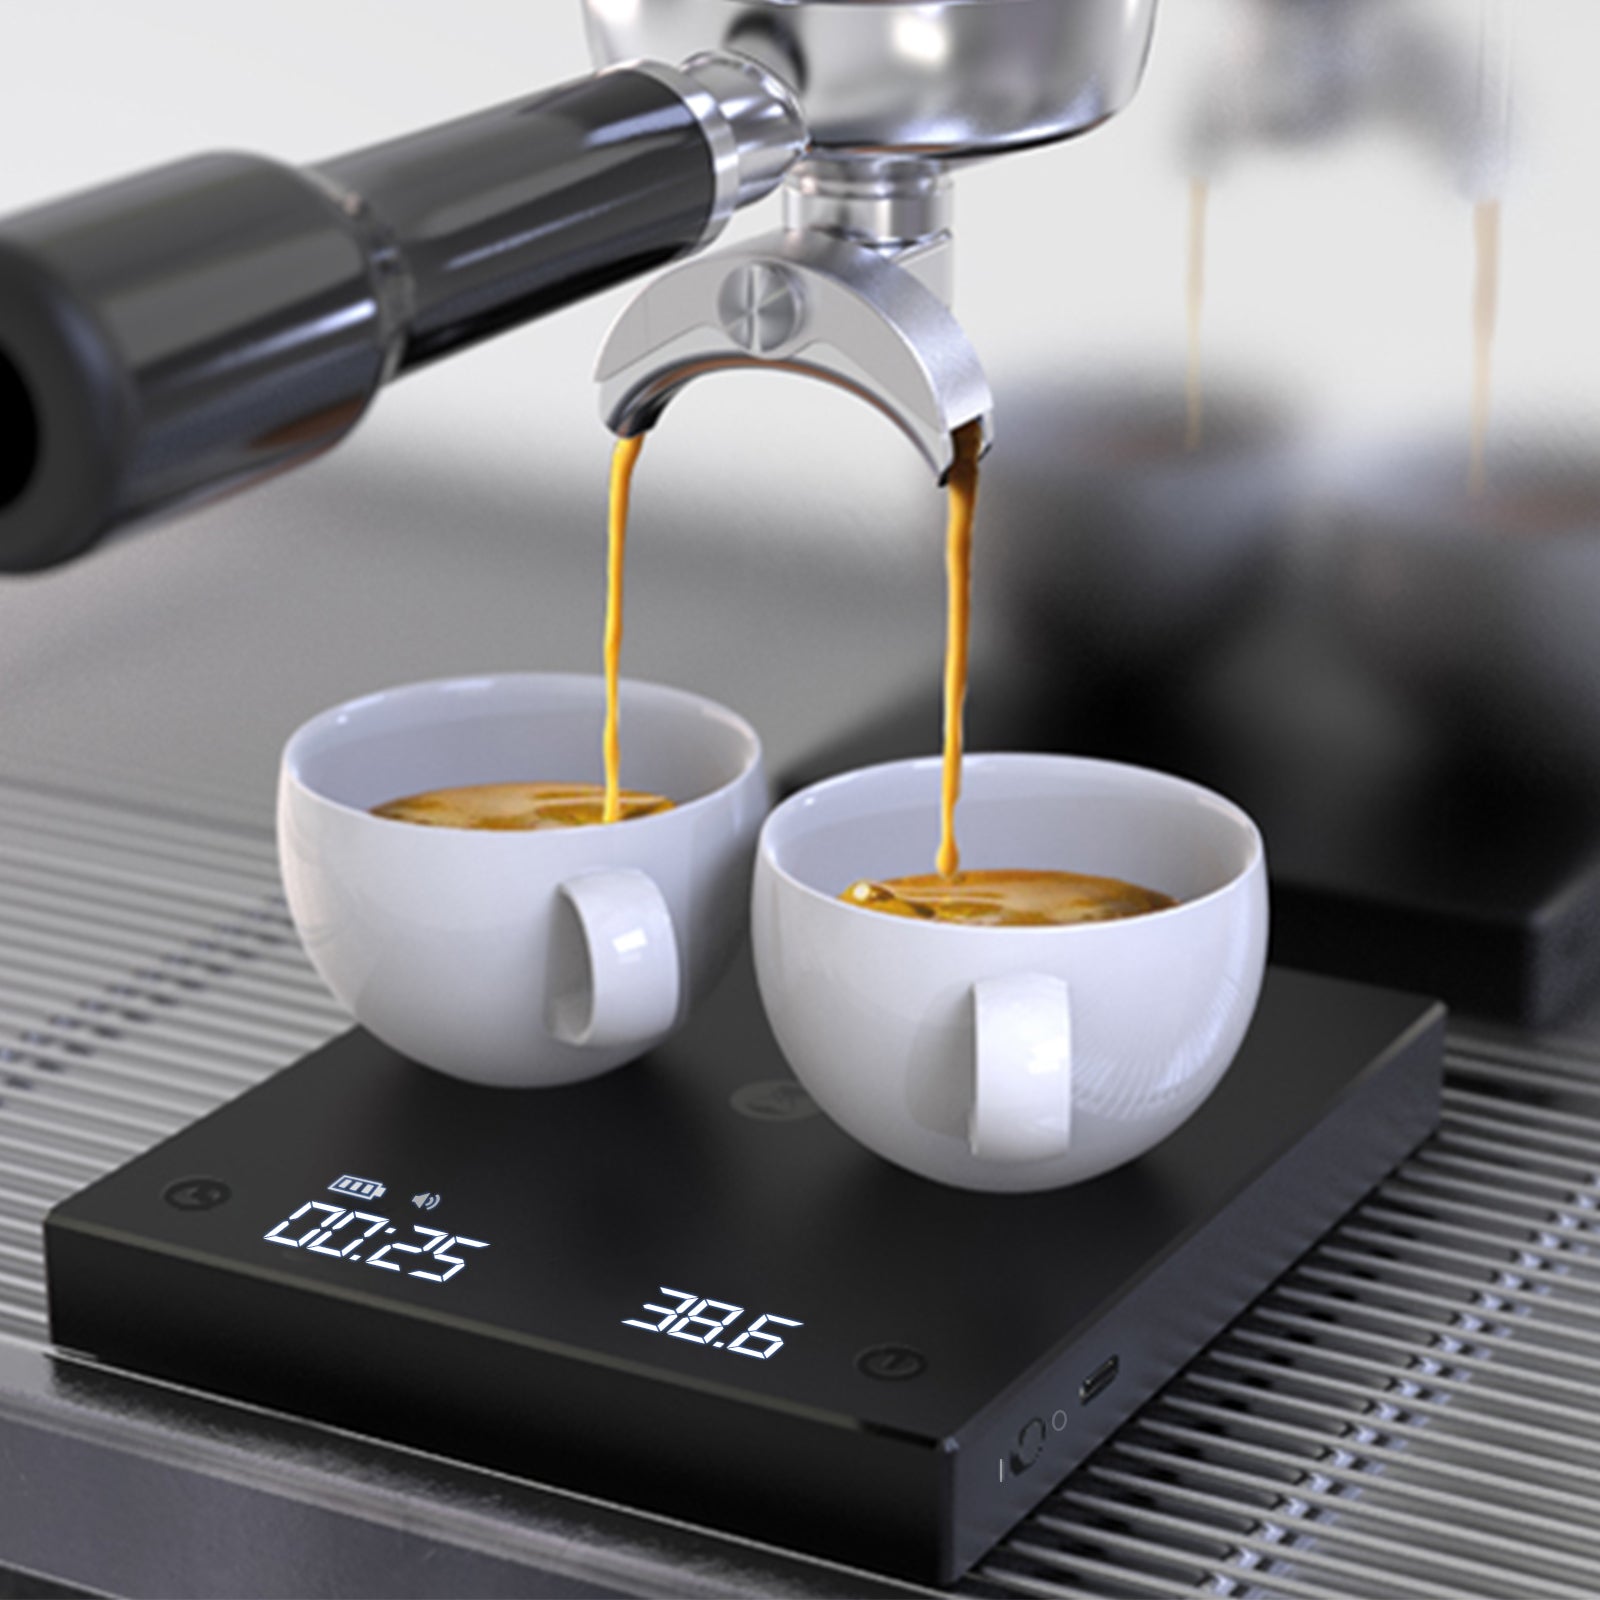 Timemore Black Mirror Nano Review - The New Espresso Scale